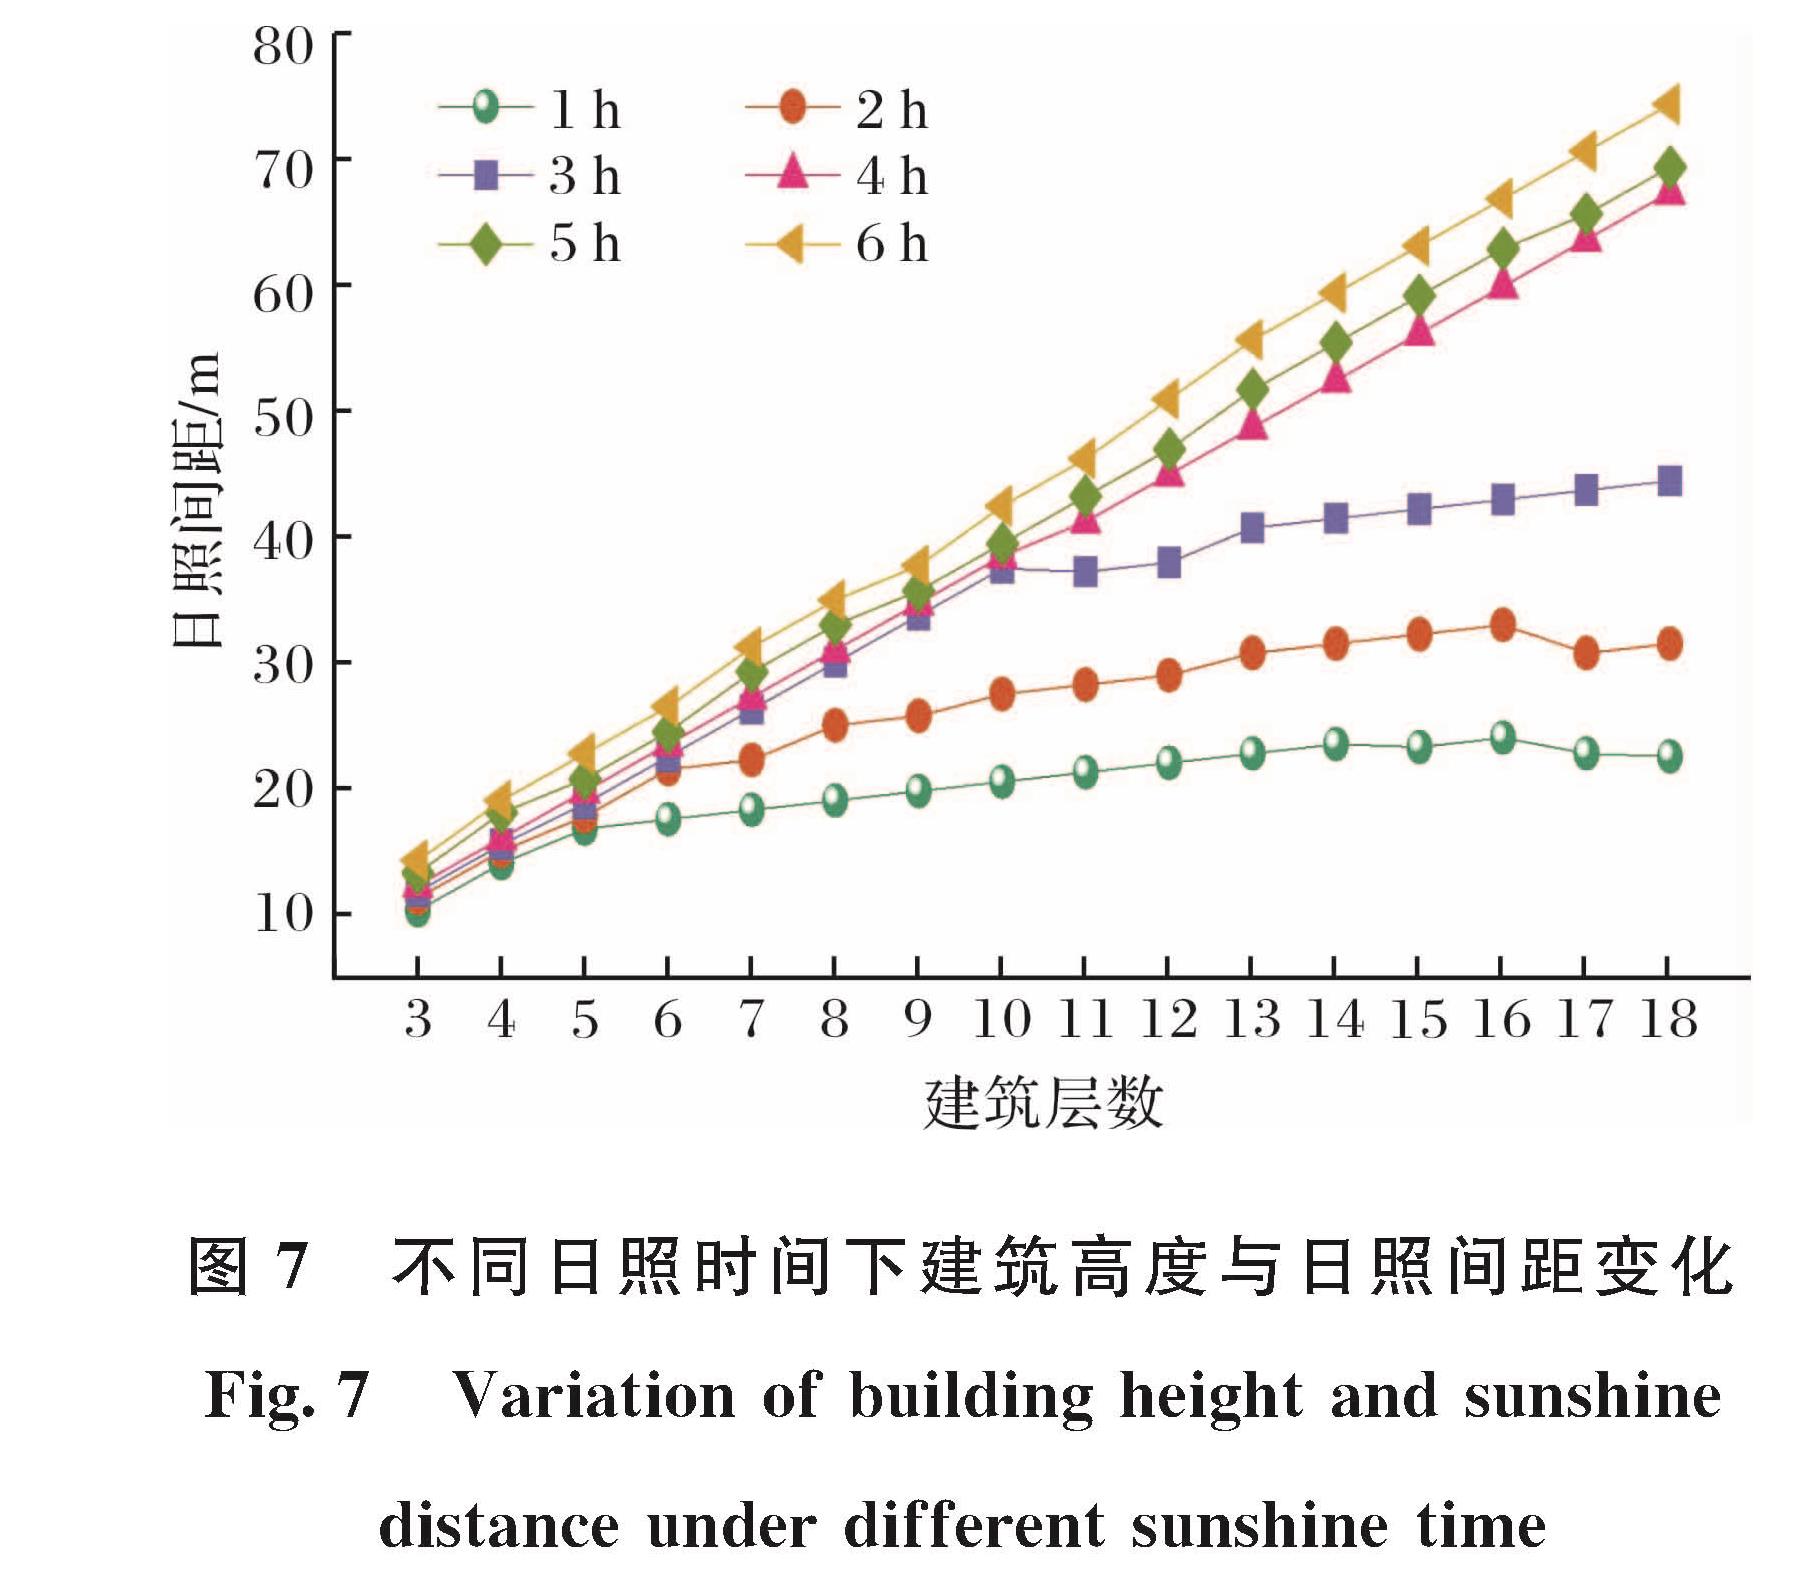 图7 不同日照时间下建筑高度与日照间距变化<br/>Fig.7 Variation of building height and sunshine distance under different sunshine time